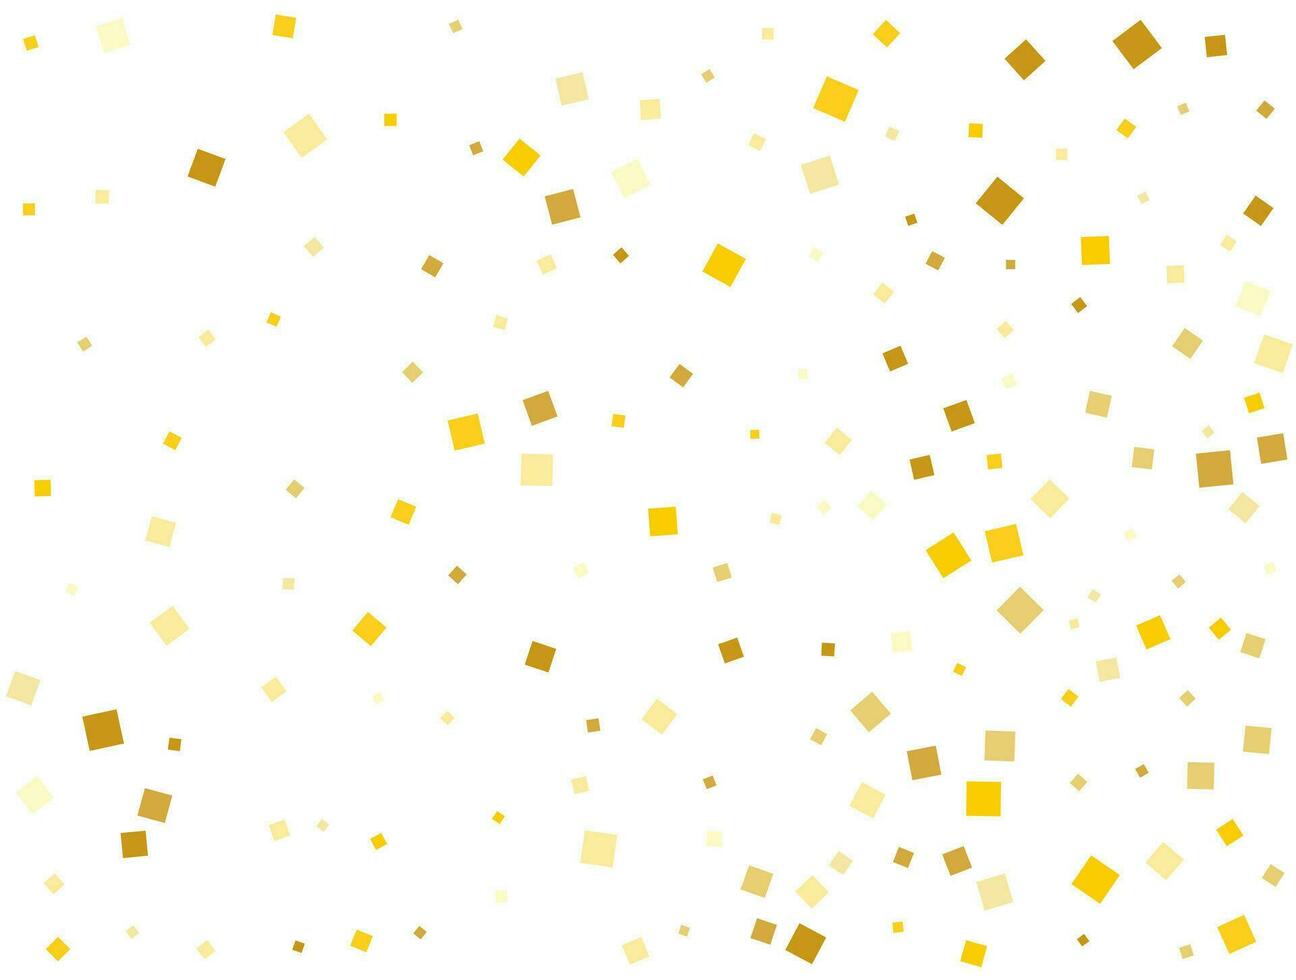 Golden Christmas Square Confetti. Vector illustration